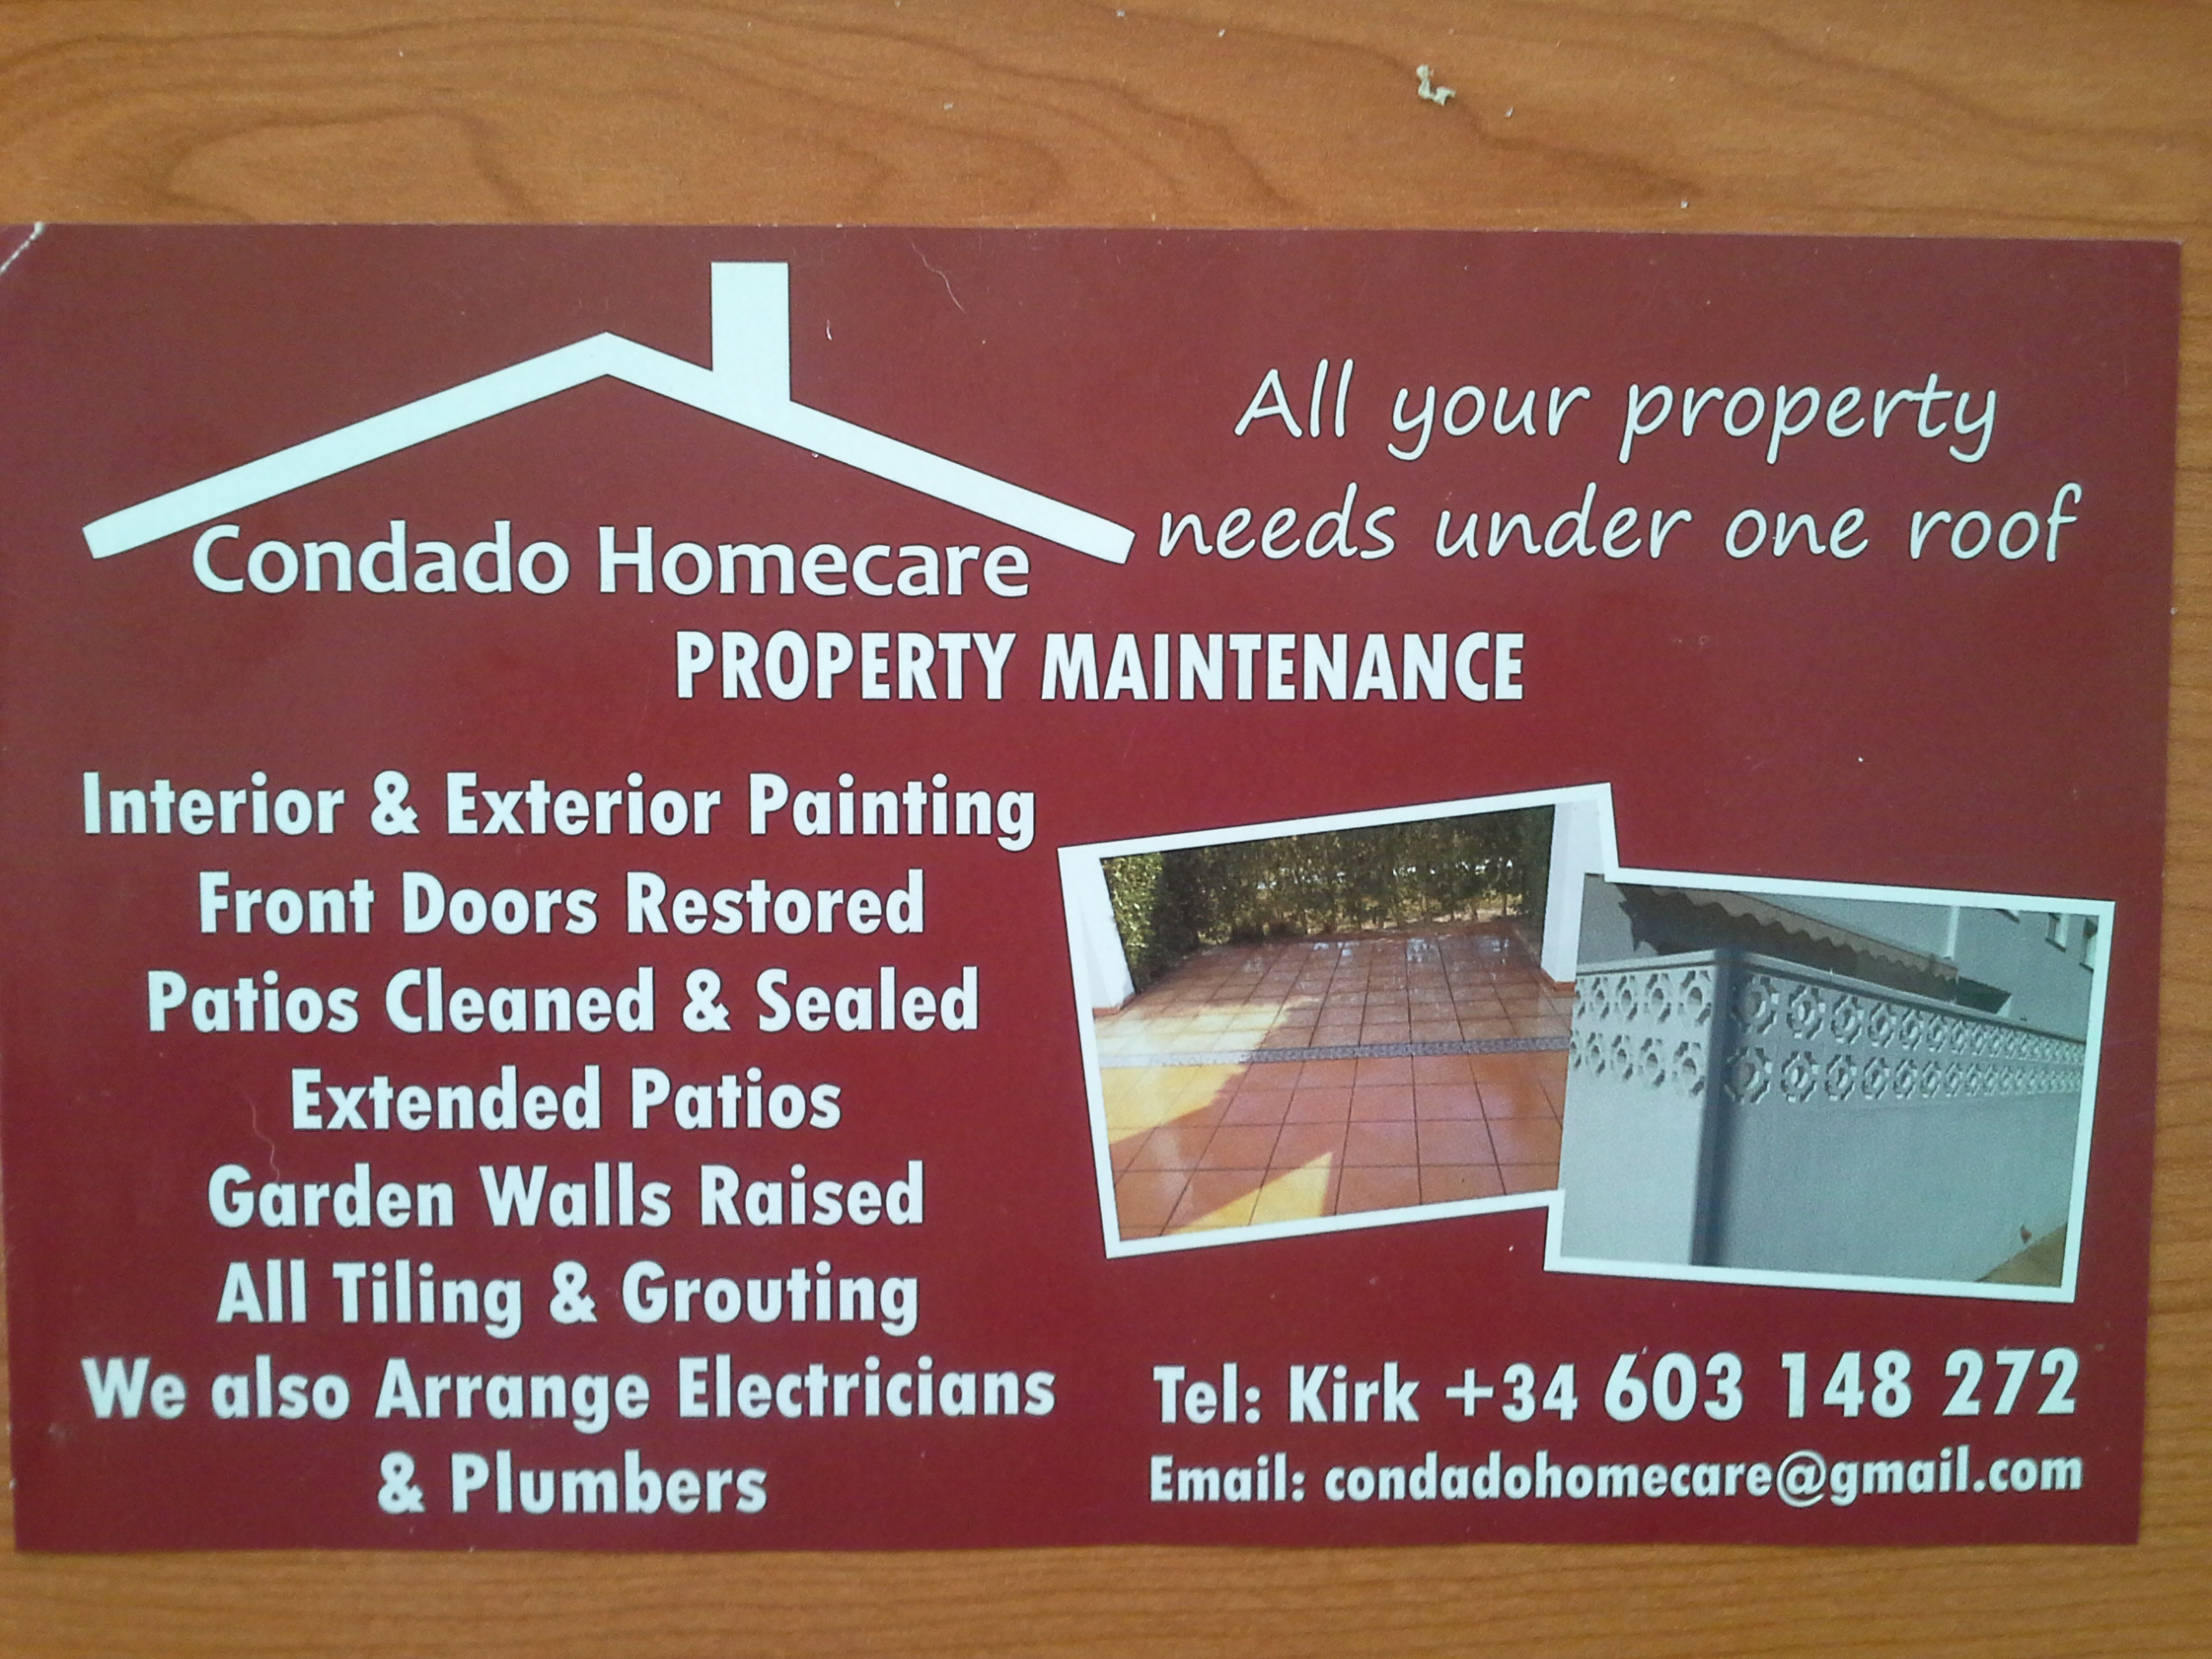 Condado Homecare Property Maintenance